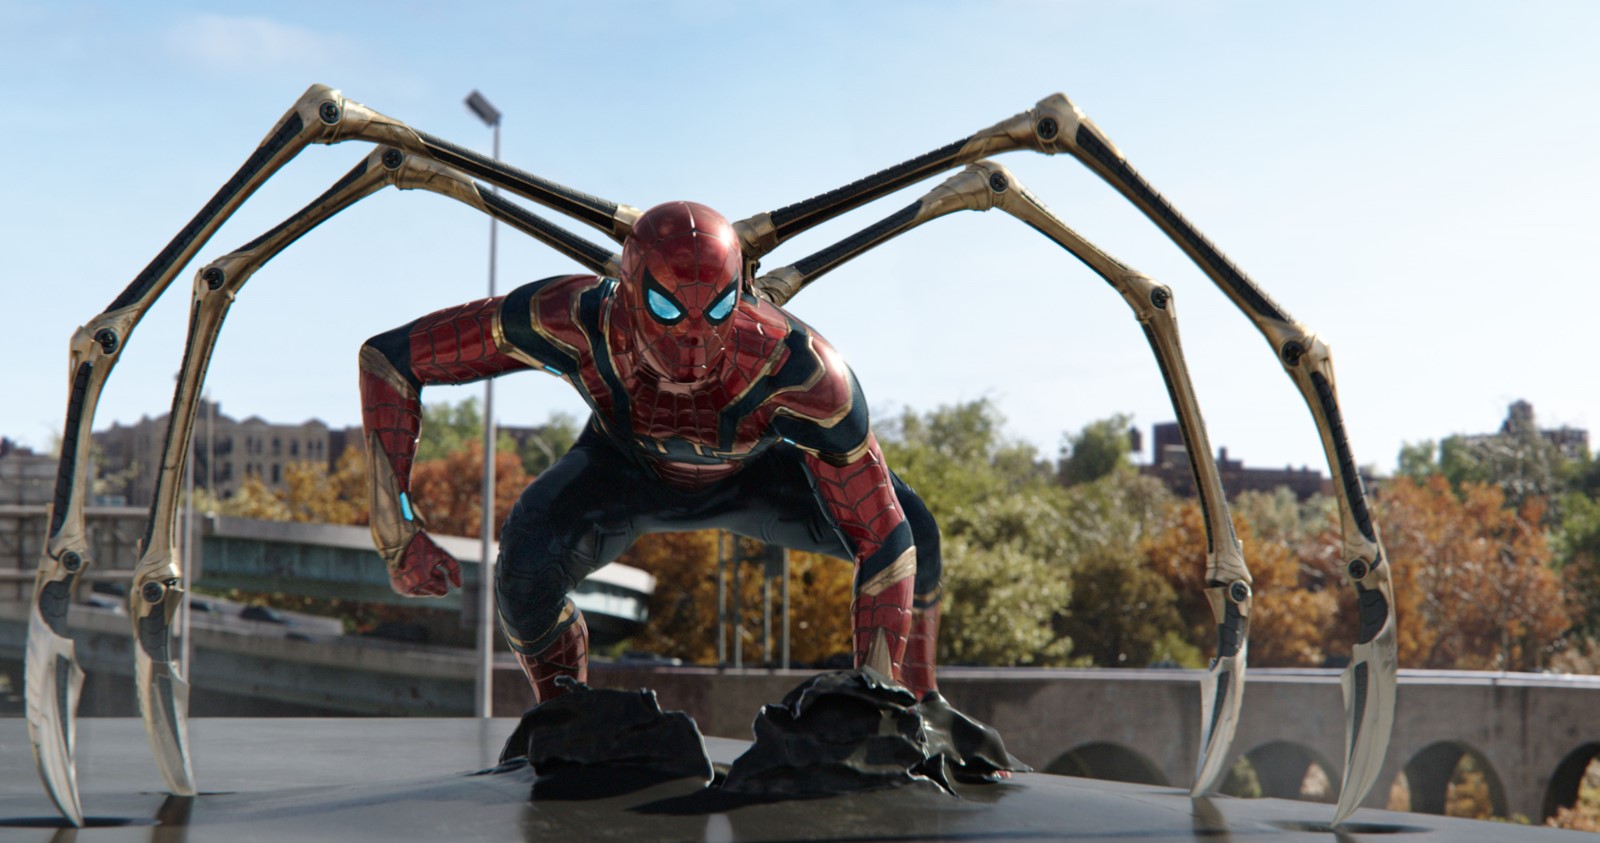 Szenenbild 9 vom Film Spider-Man - No Way home